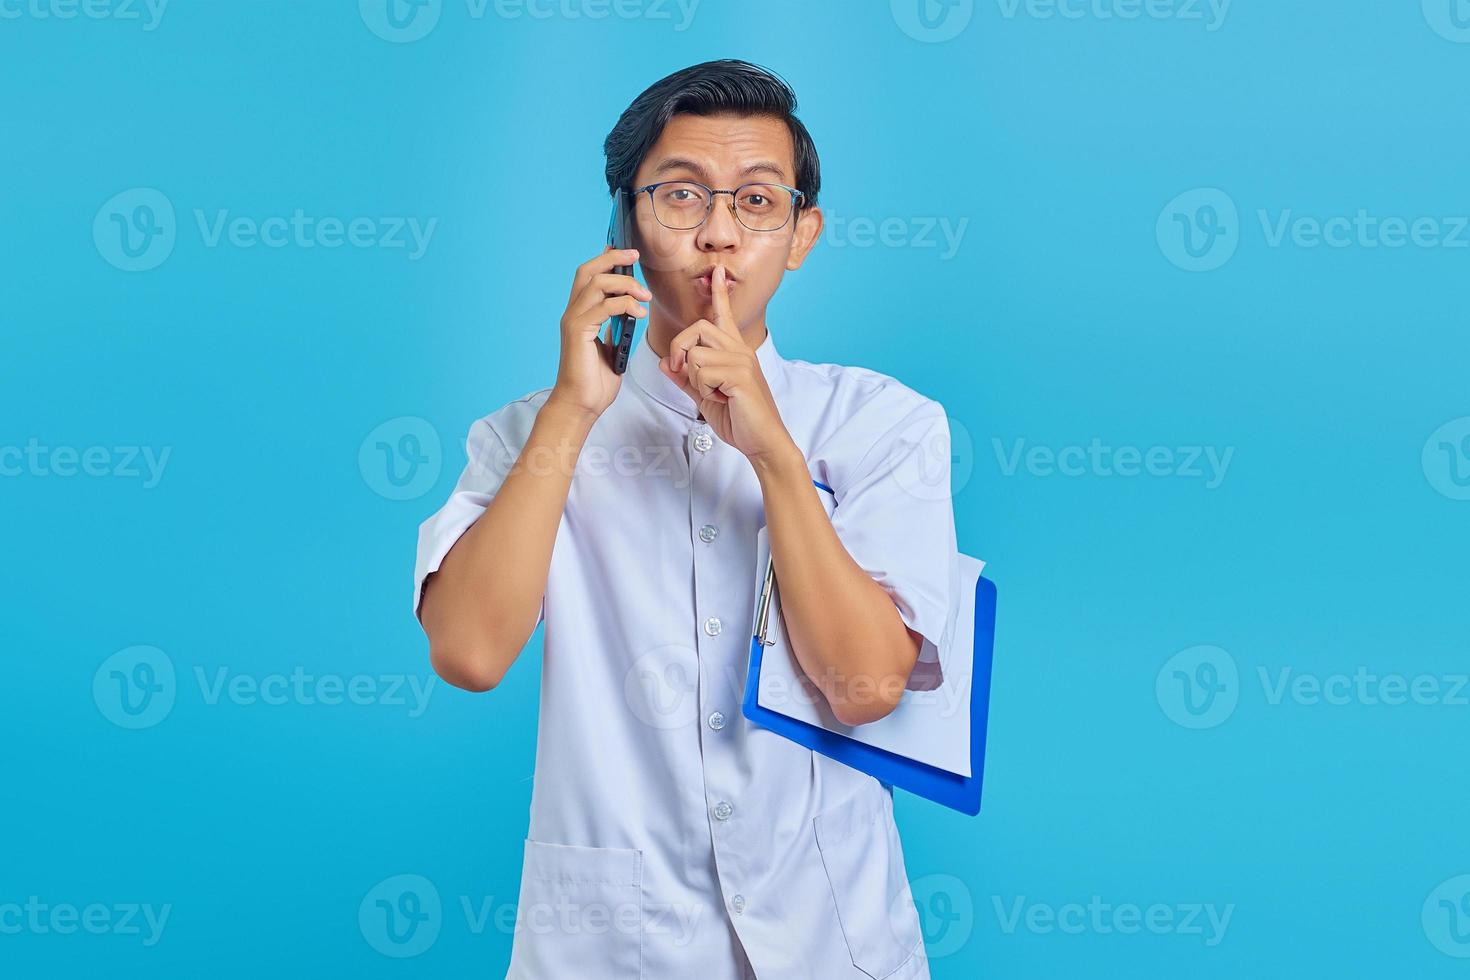 verpleger praten op mobiel klembord vasthouden en stil gebaar maken op gele achtergrond foto